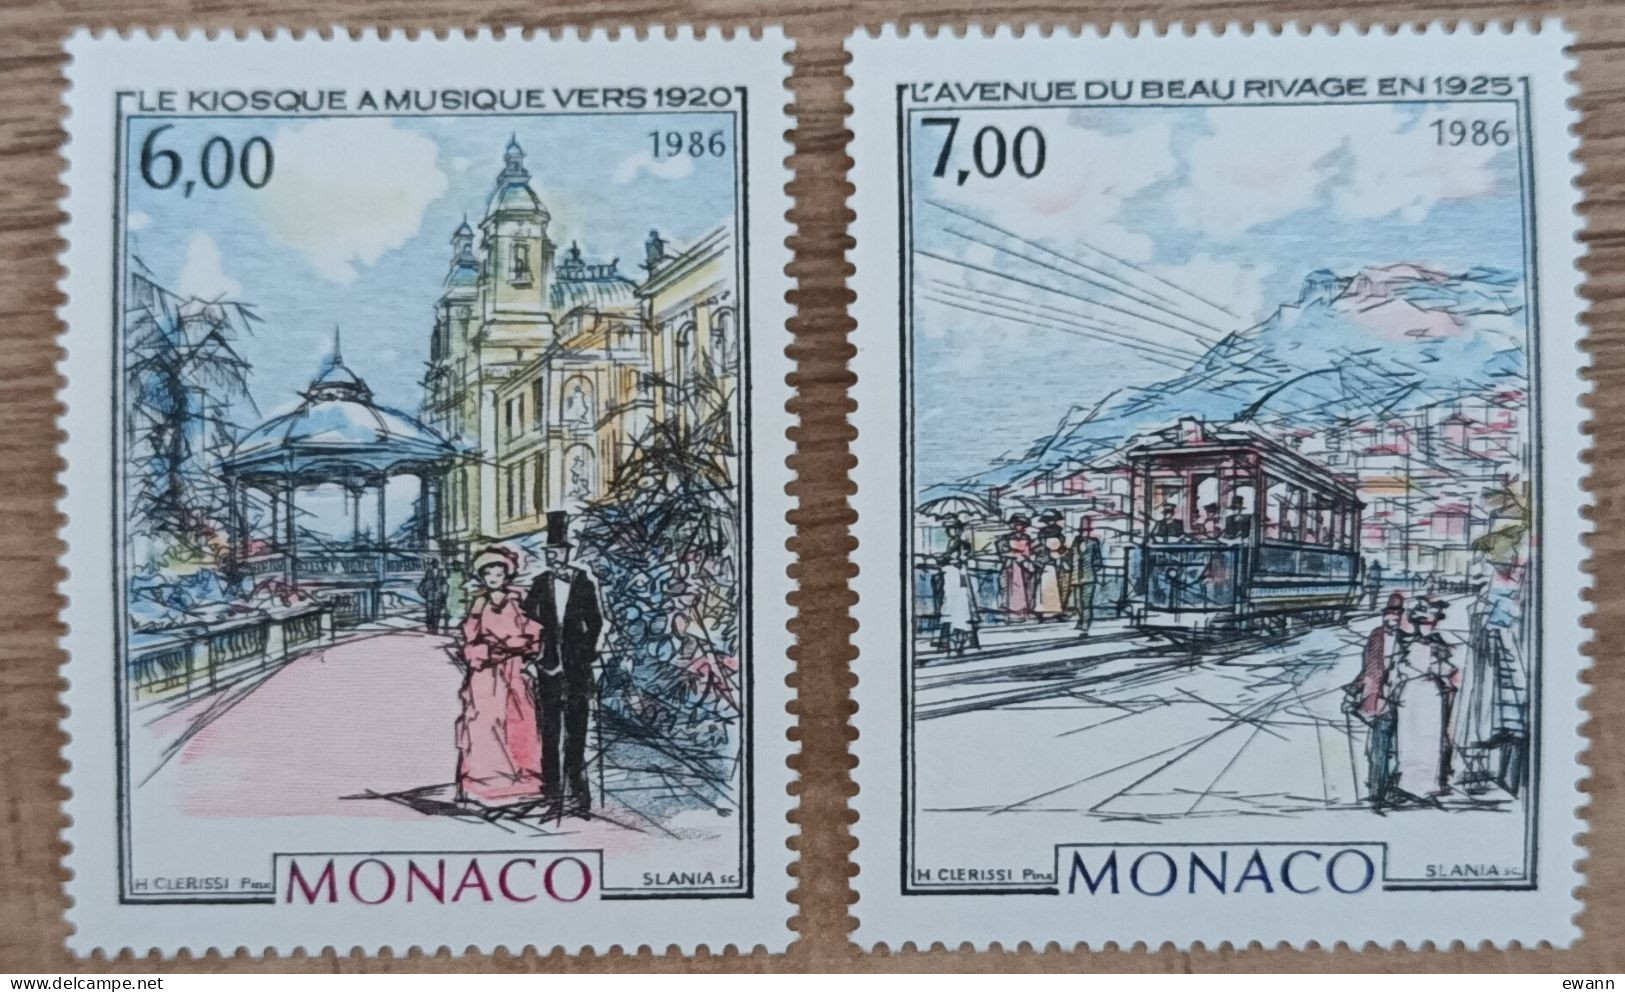 Monaco - YT N°1543, 1544 - Monaco à La Belle Epoque / Kiosque à Musique / Avenue Du Beau Rivage - 1986 - Neuf - Ongebruikt